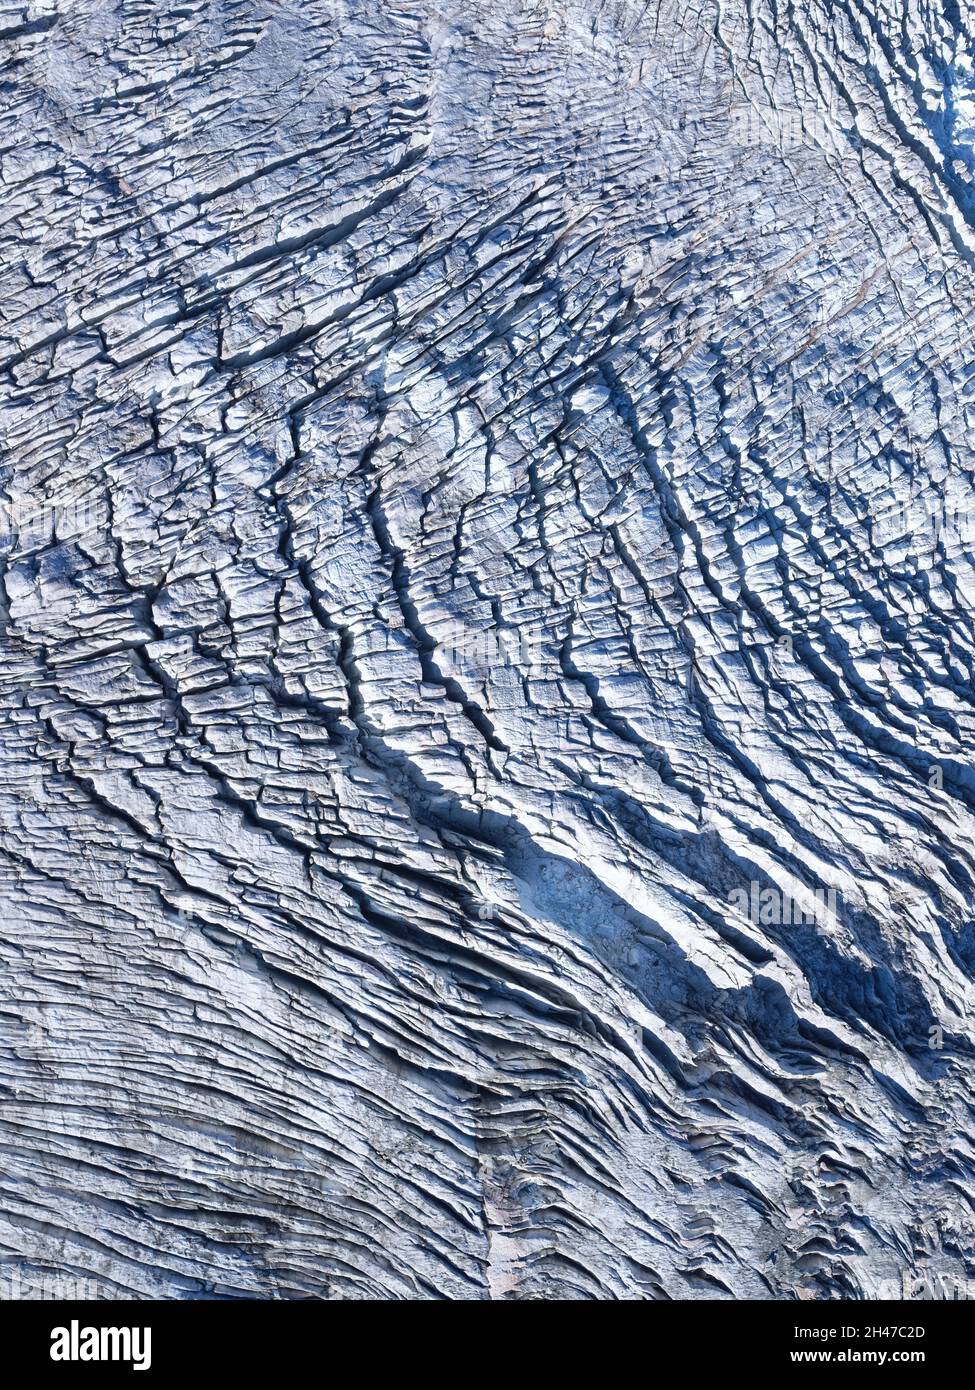 VUE AÉRIENNE VERTICALE. Crevasses à la surface du glacier Bossons en octobre. Chamonix-Mont blanc, haute-Savoie, Auvergne-Rhône-Alpes, France. Banque D'Images